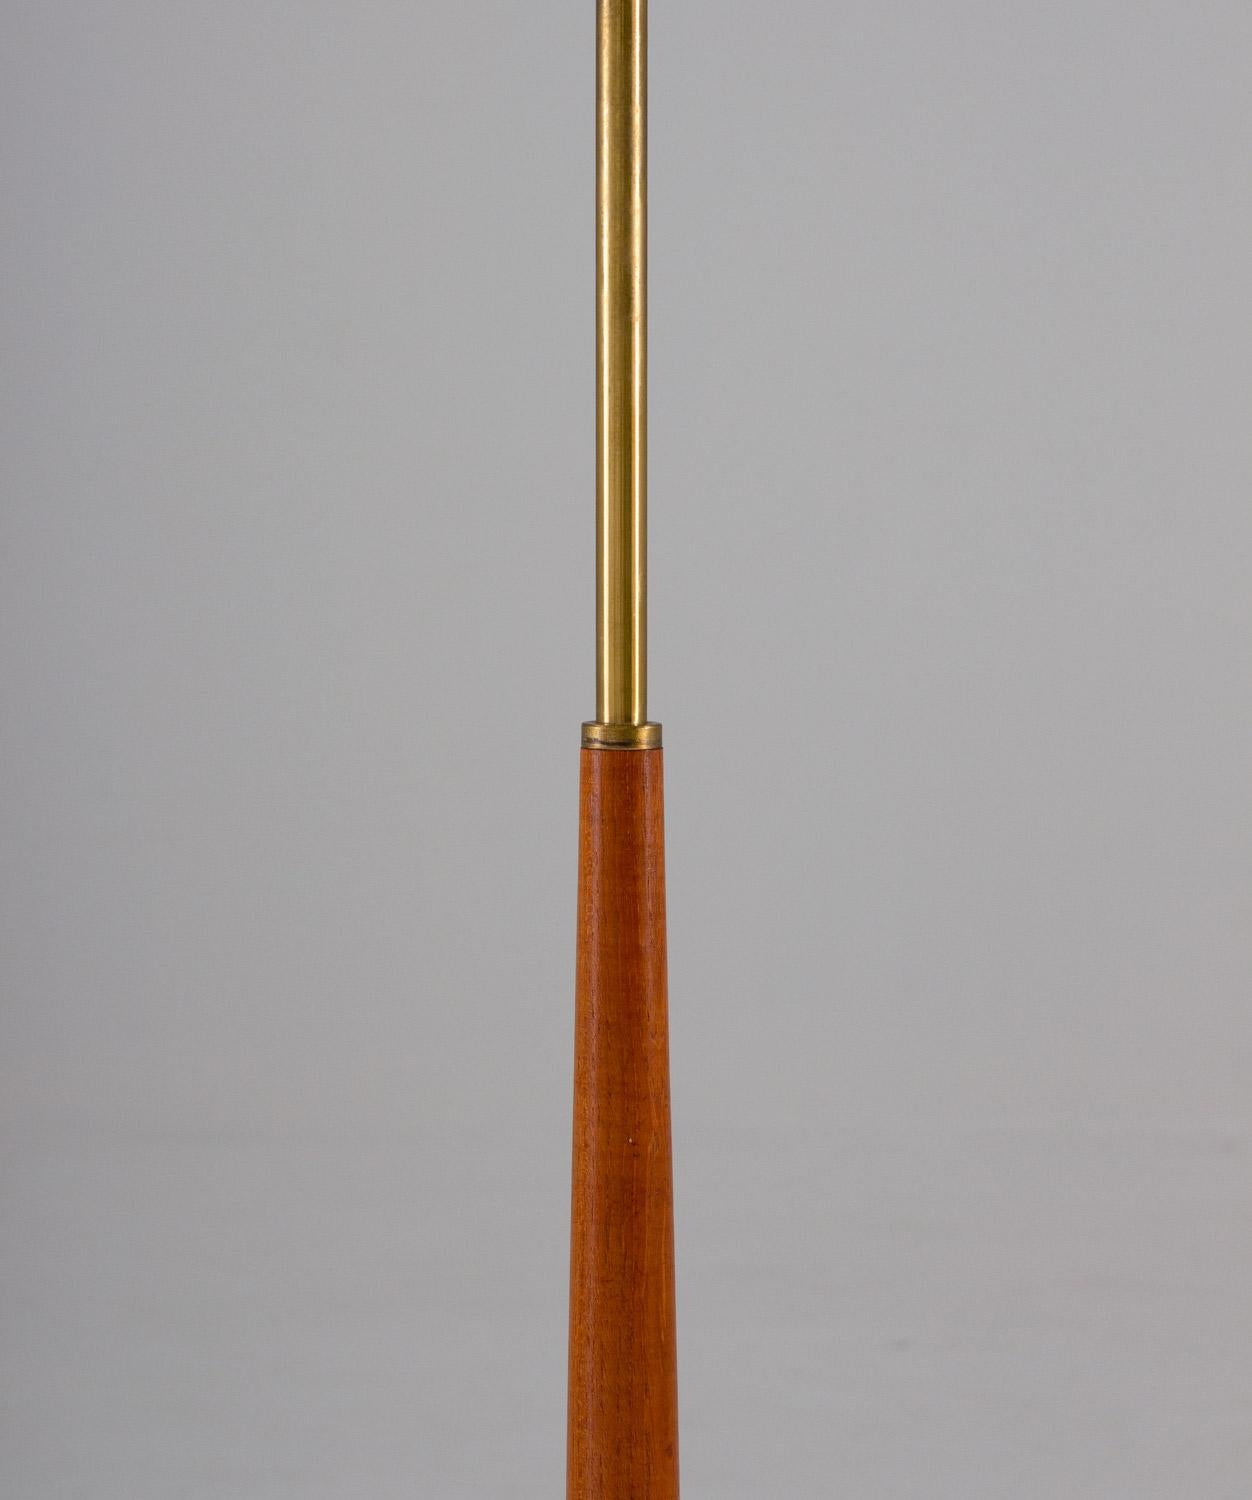 Swedish Scandinavian Midcentury Floor Lamp in Brass and Wood